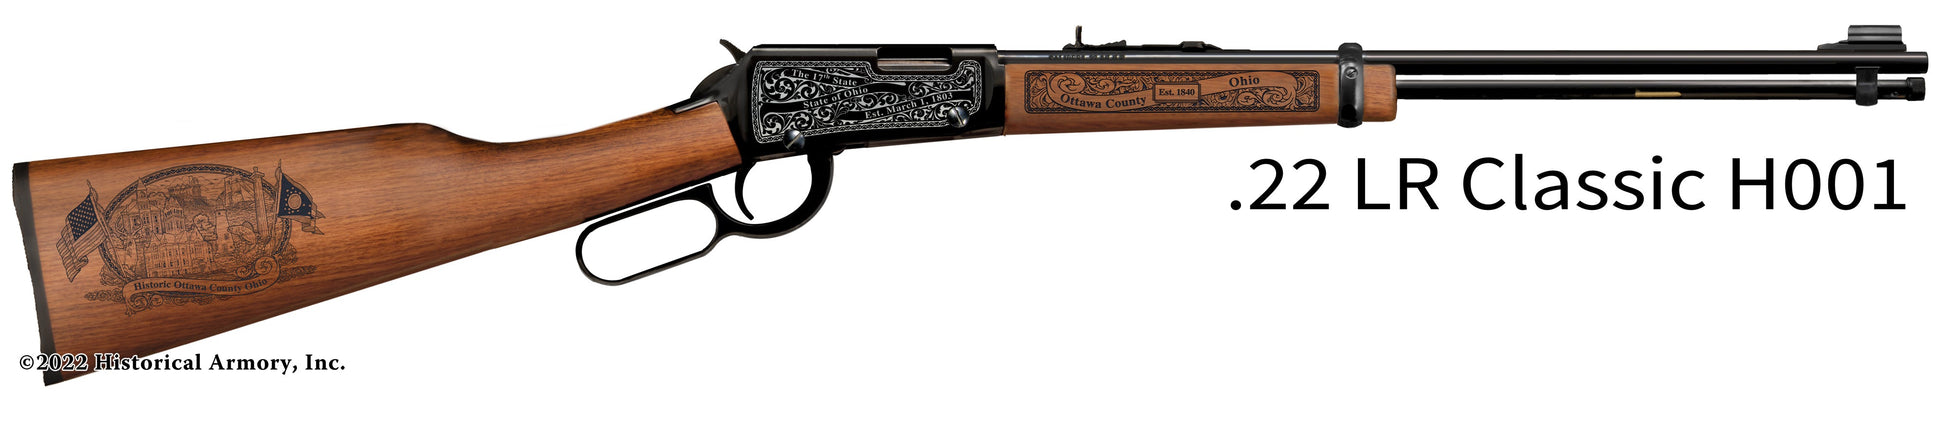 Ottawa County Ohio Engraved Henry H001 Rifle